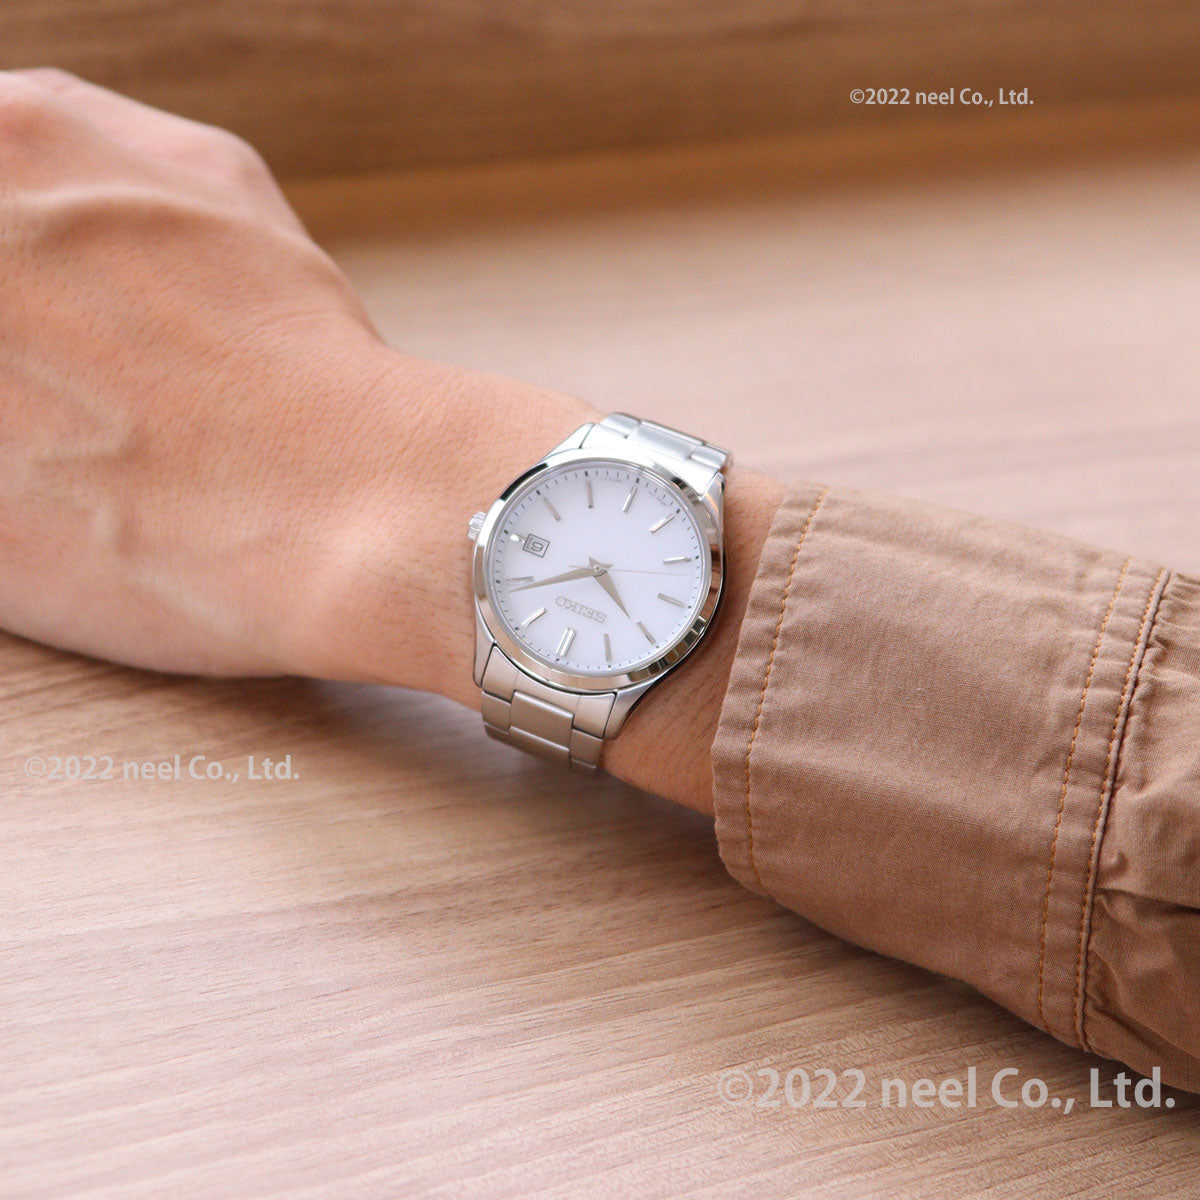 セイコー セレクション SEIKO SELECTION ソーラー 腕時計 メンズ レディース ペアモデル SBPX143 STPX093